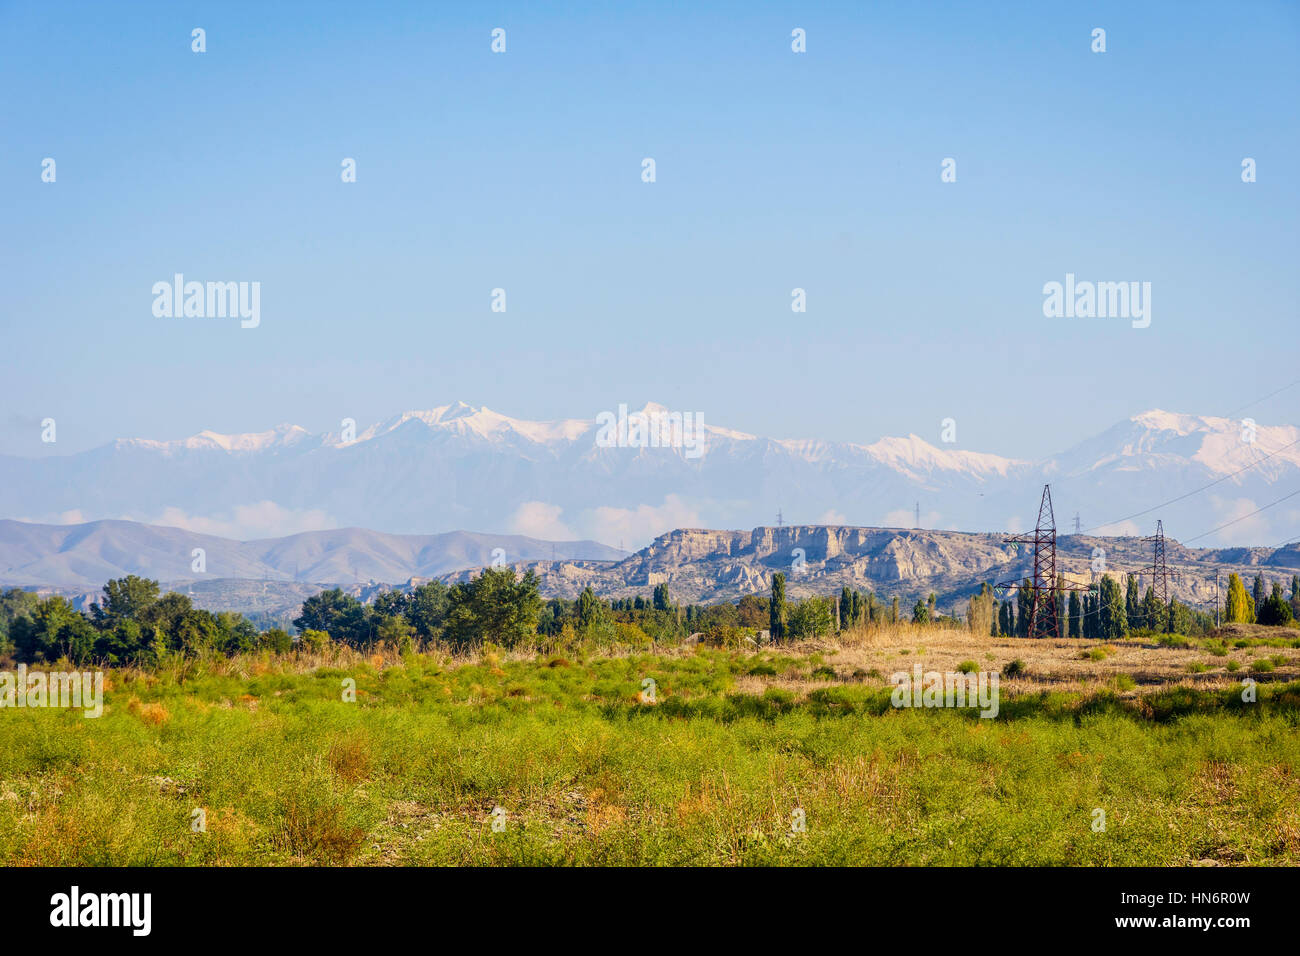 Fluss, grüne Wiese, Felder und Berge mit schneebedeckten Gipfeln, erstaunliche Landschaften von Aserbaidschan Stockfoto